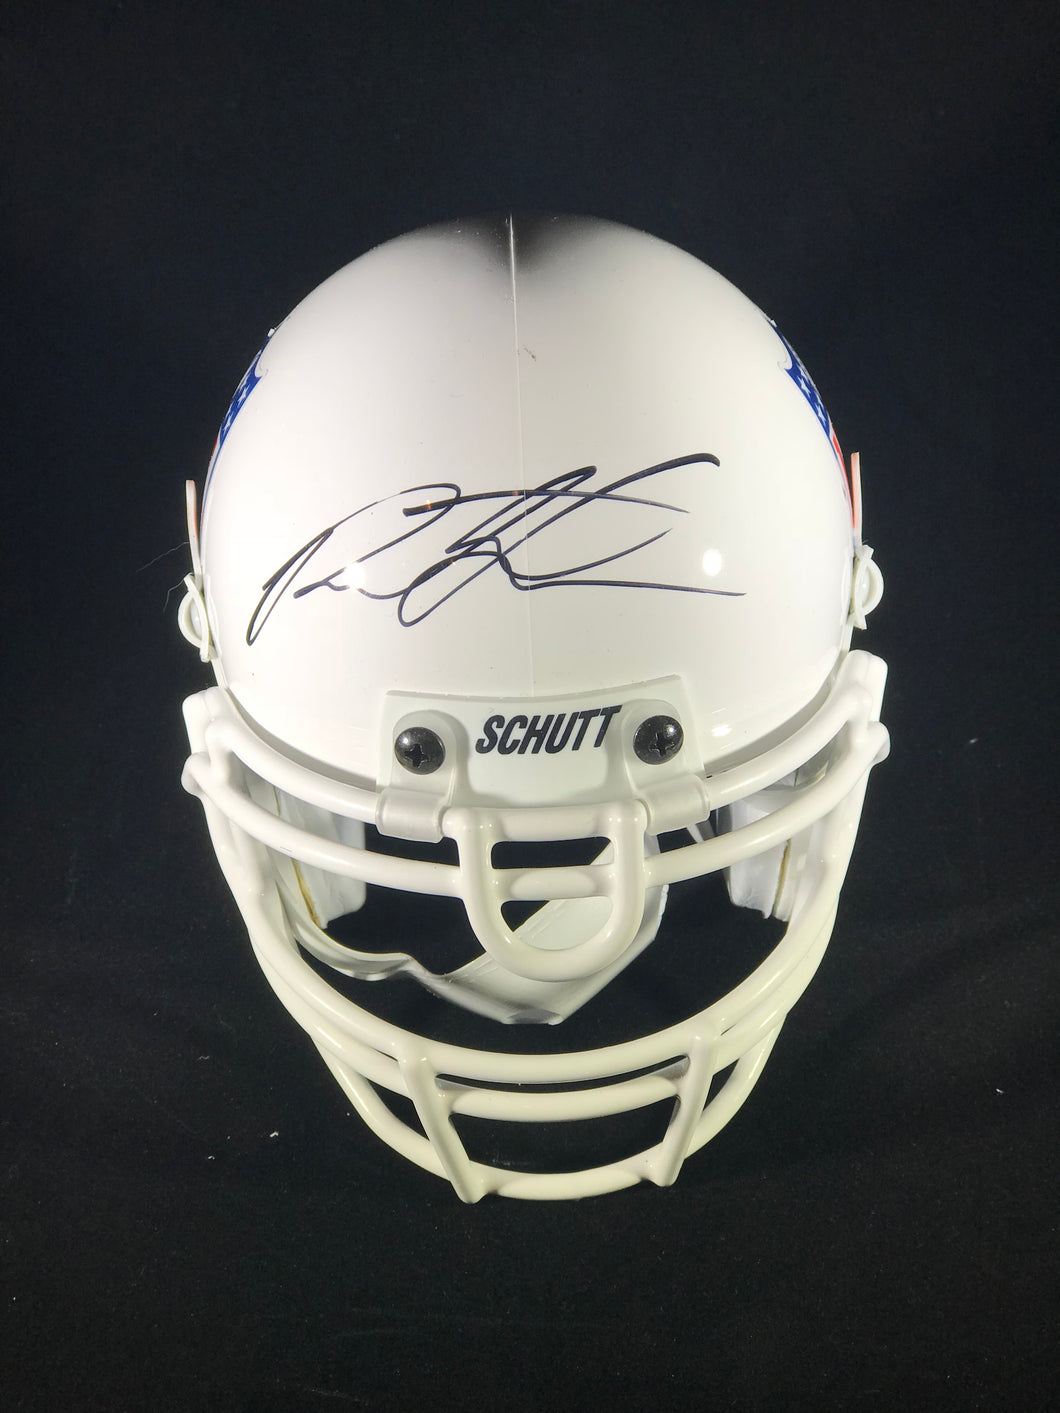 Paxton Lynch Autographed Mini Football Helmet W/JSA